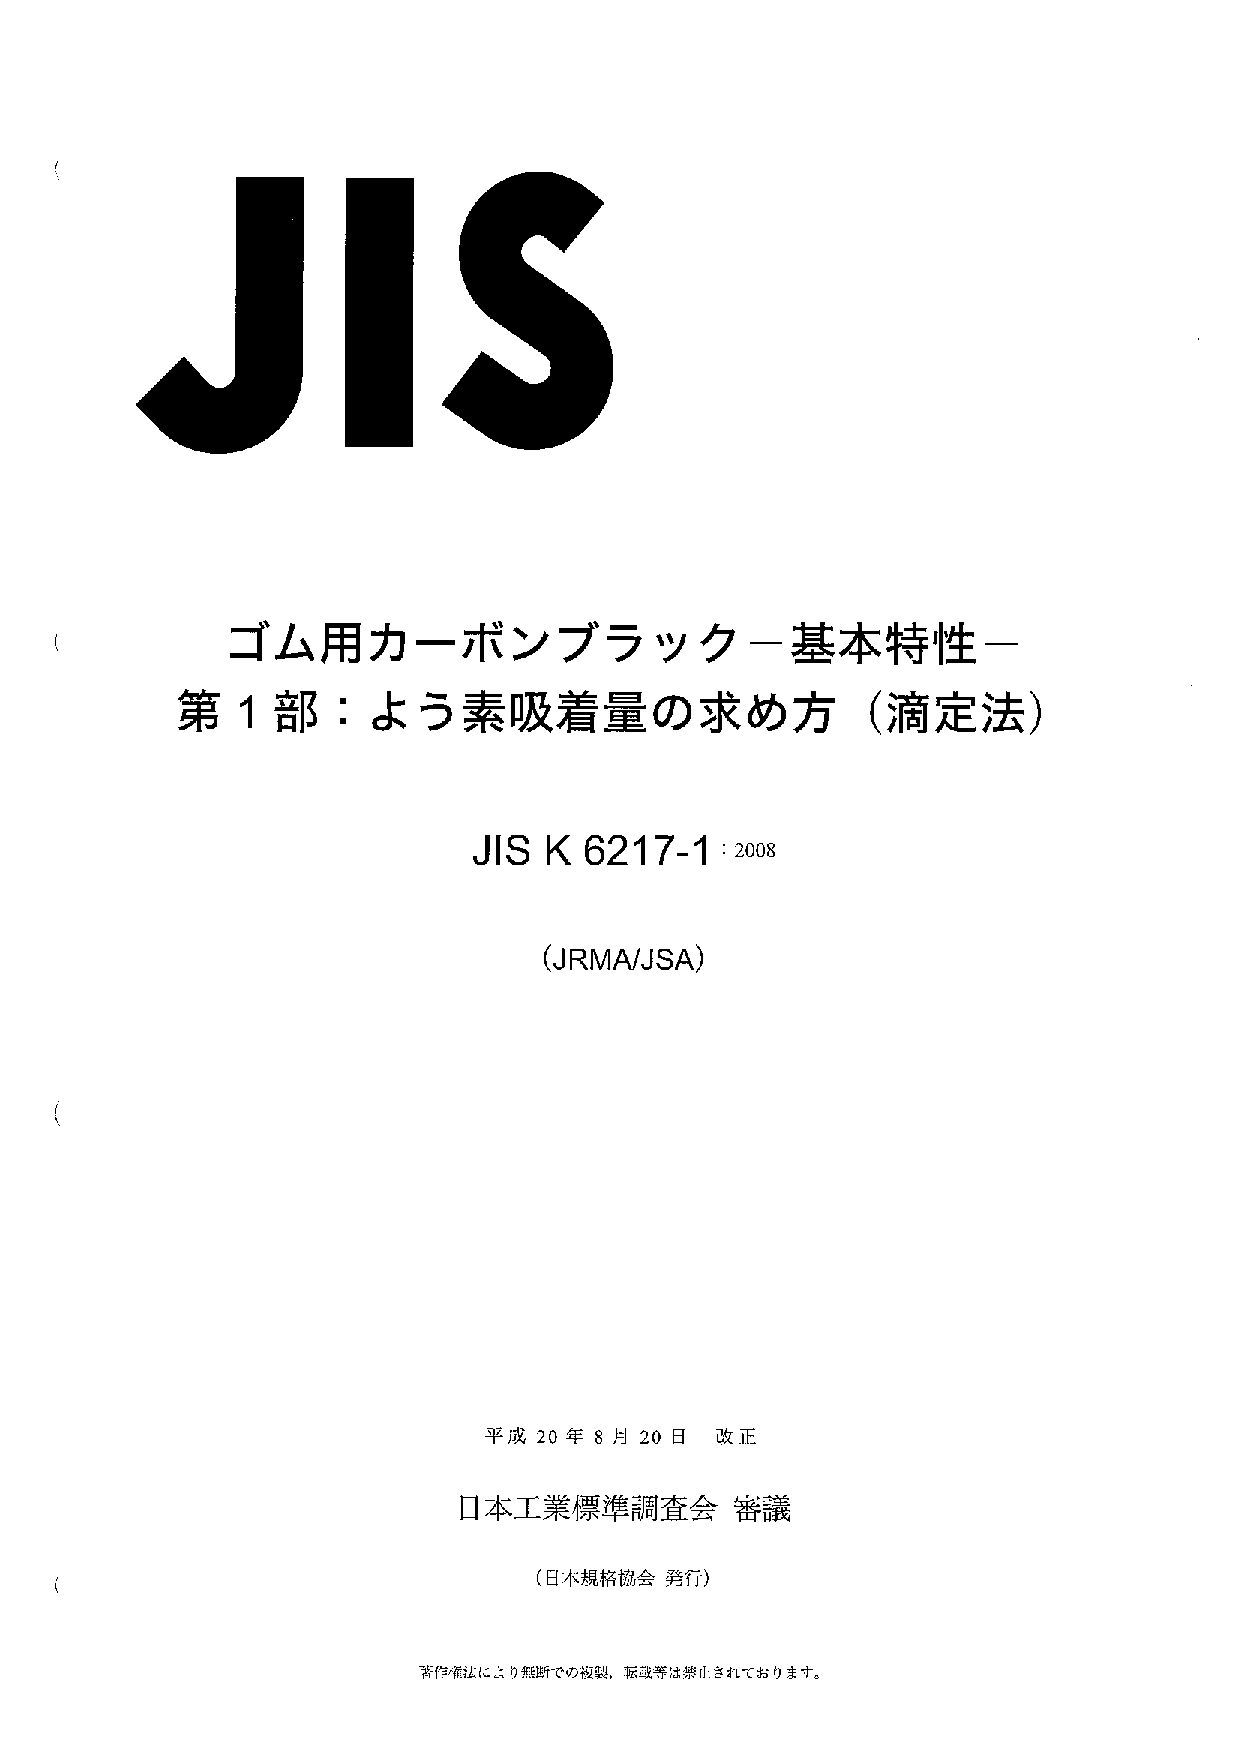 JIS K 6217-1:2008封面图